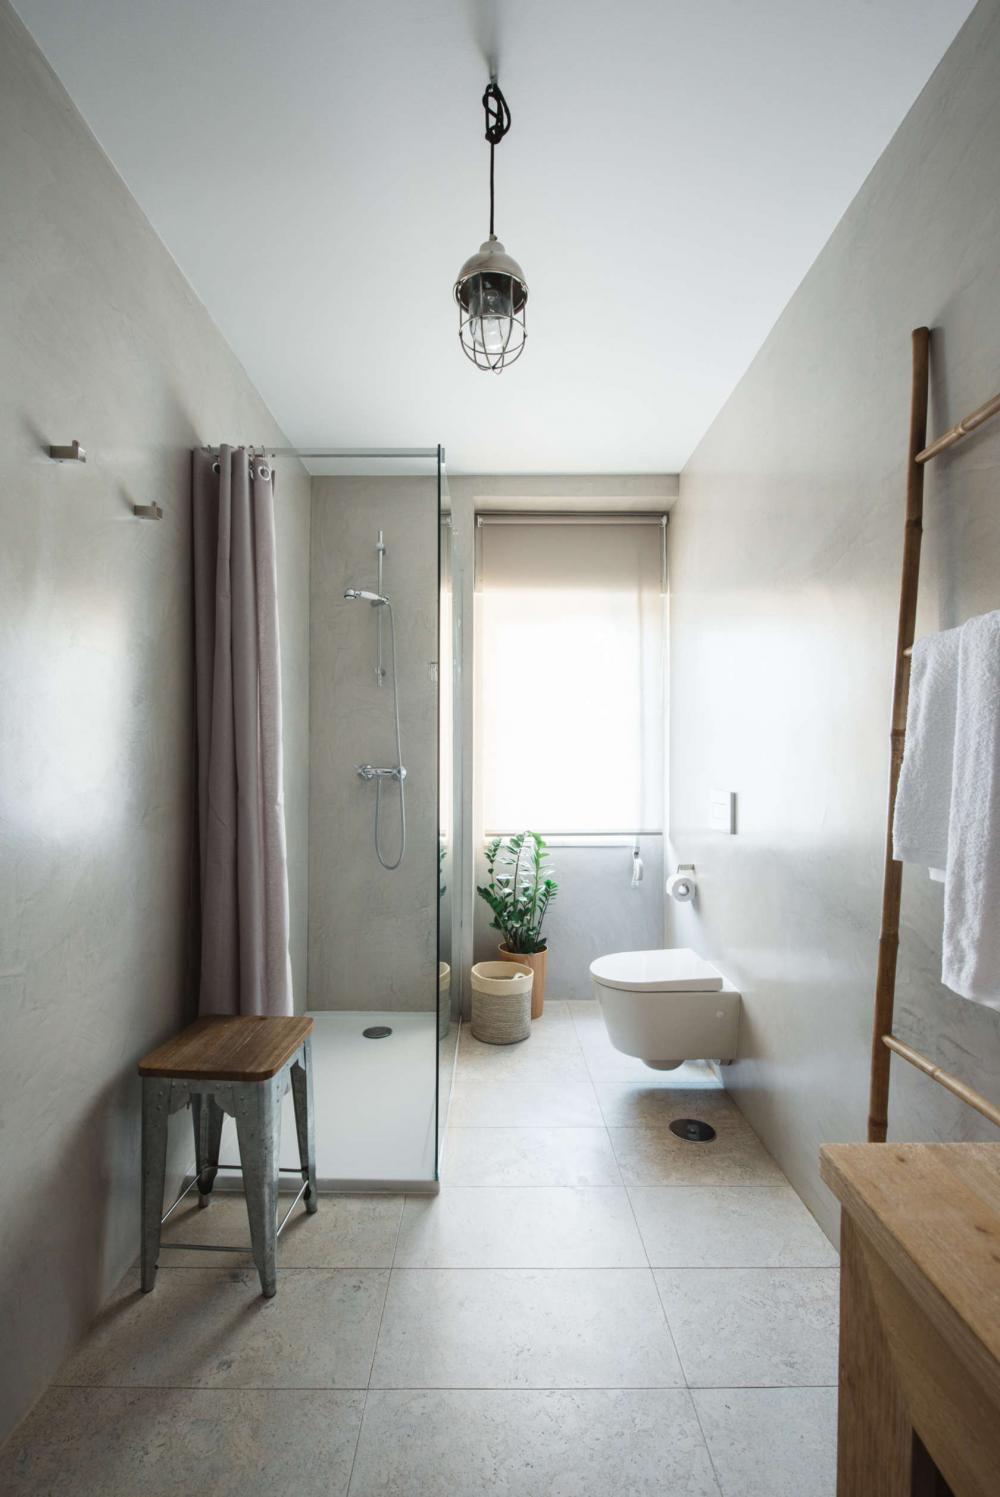 Phòng tắm cũng được thiết kế ô cửa lớn để lấy ánh sáng trực tiếp,  rèm cửa đảm bảo sự riêng tư nhất định